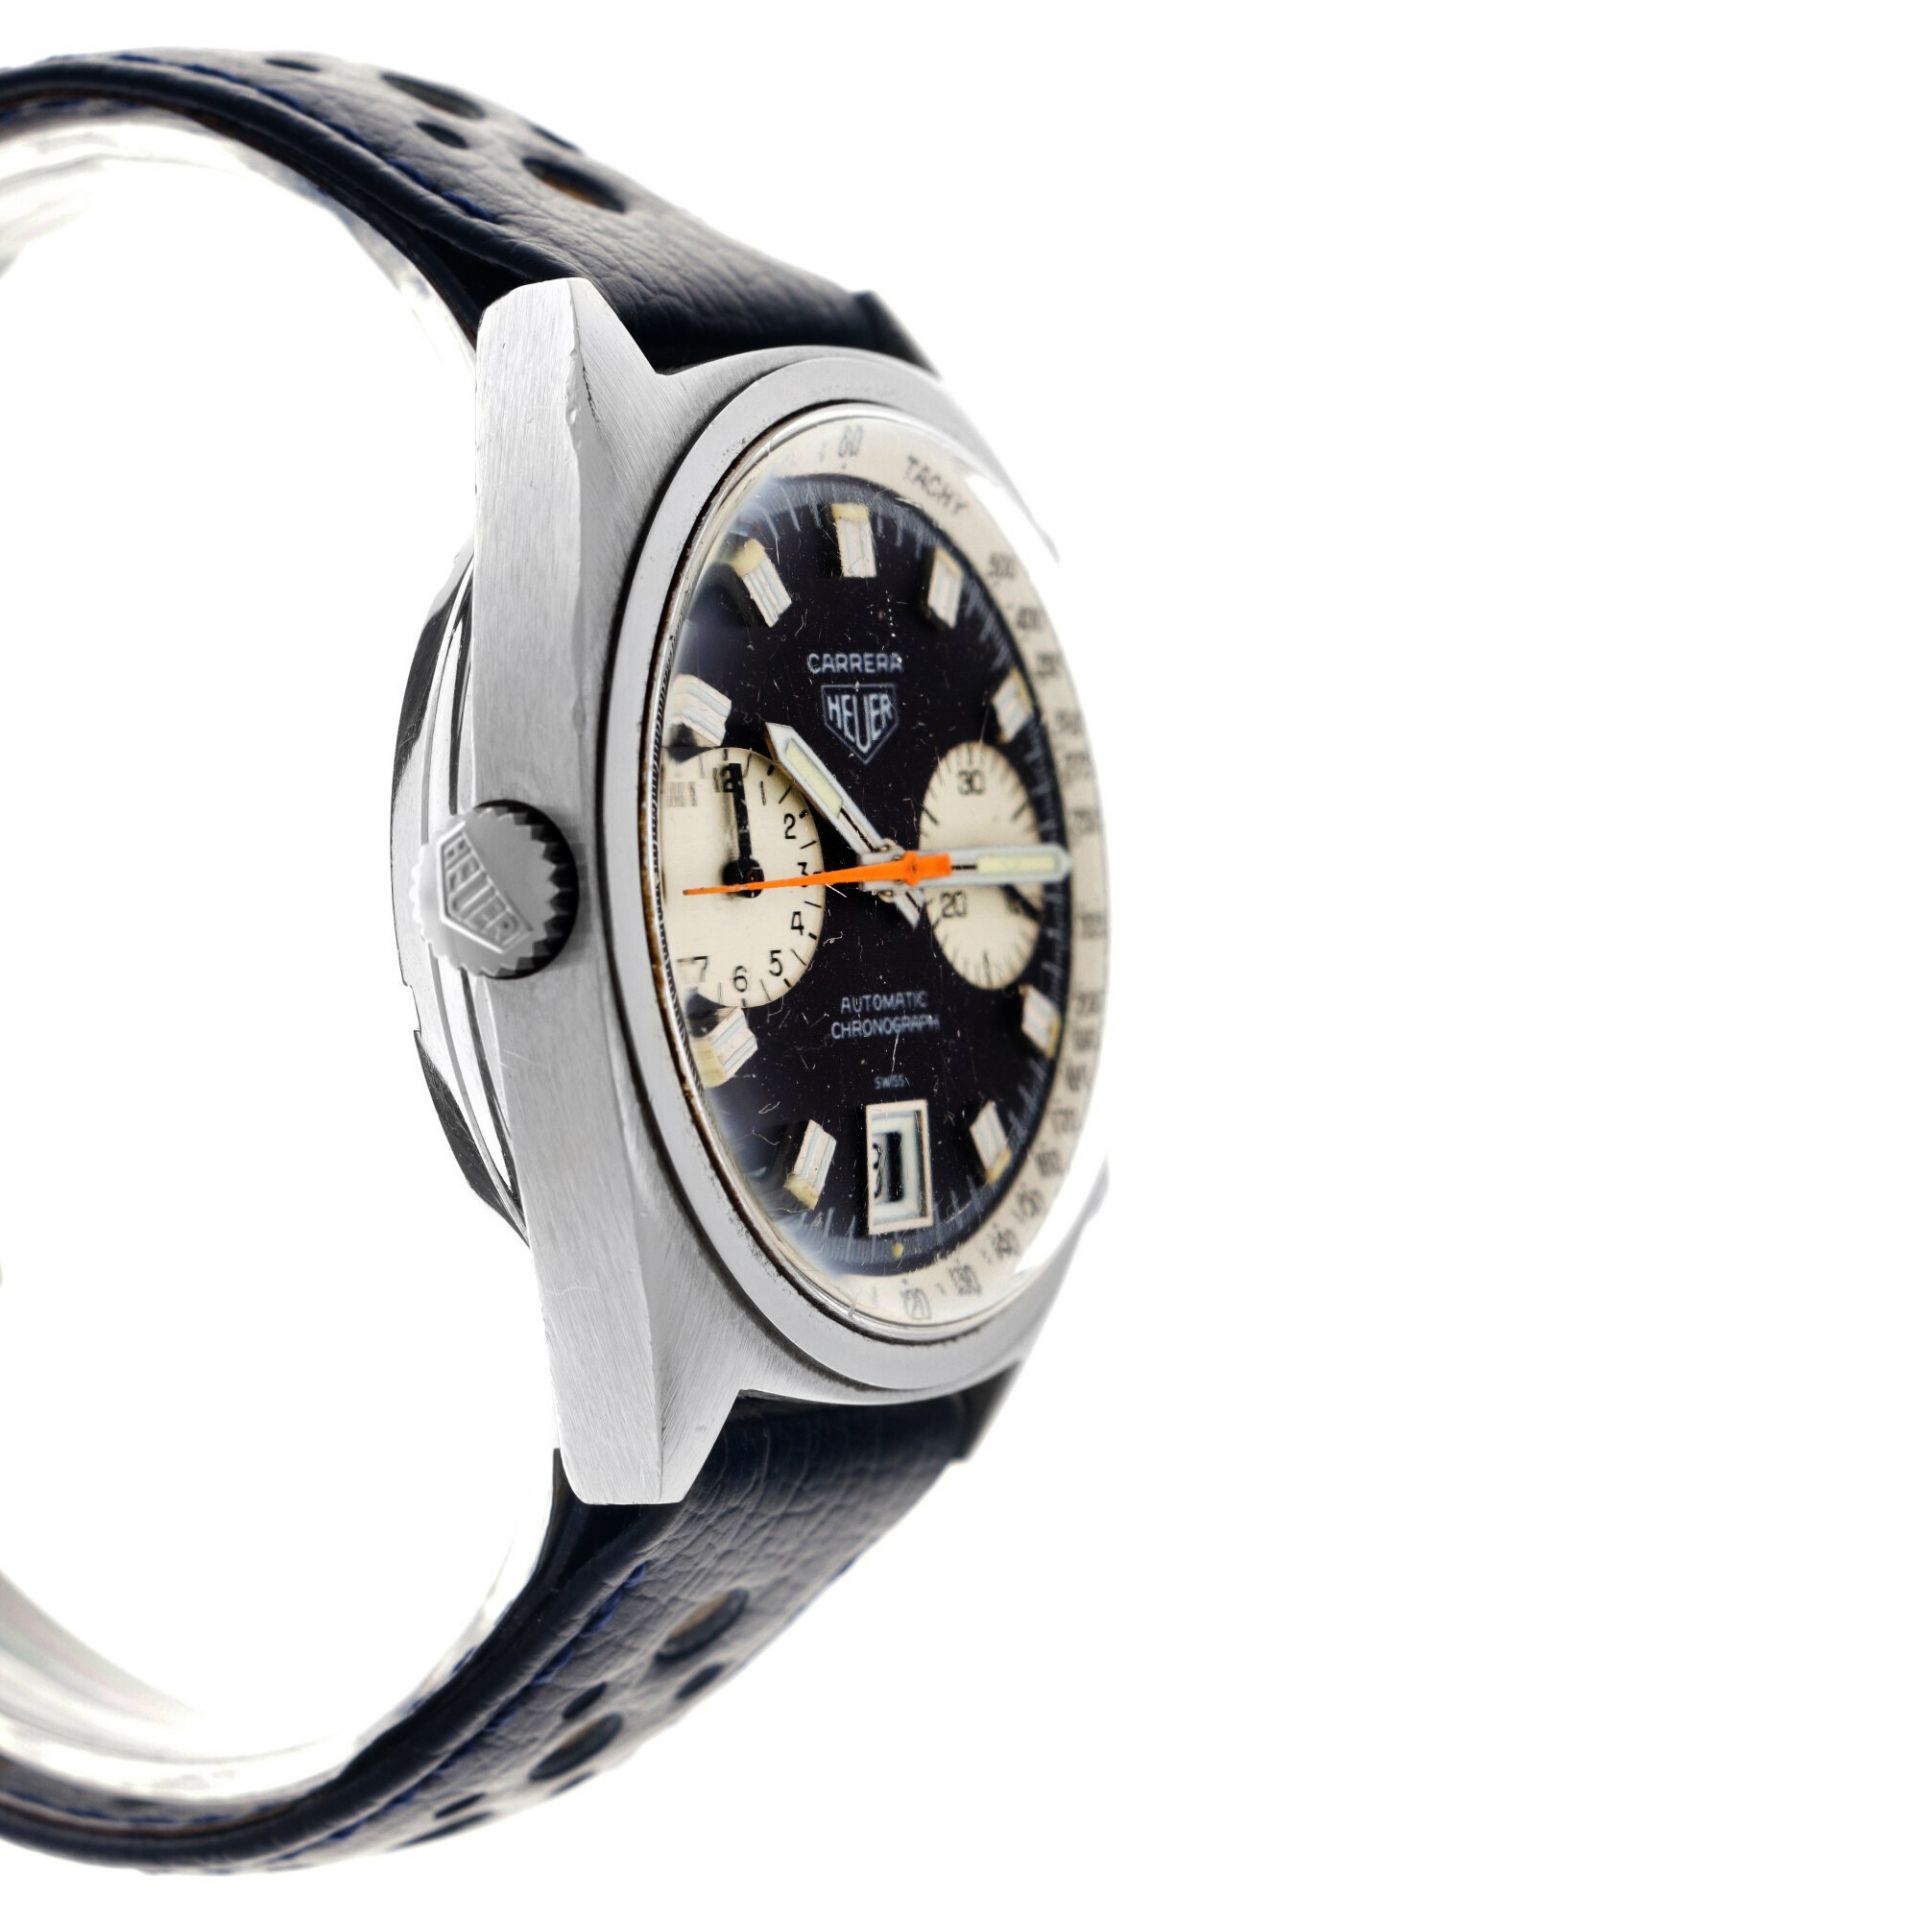 Heuer Carrera 1153 - Men's watch - approx. 1970. - Image 4 of 5